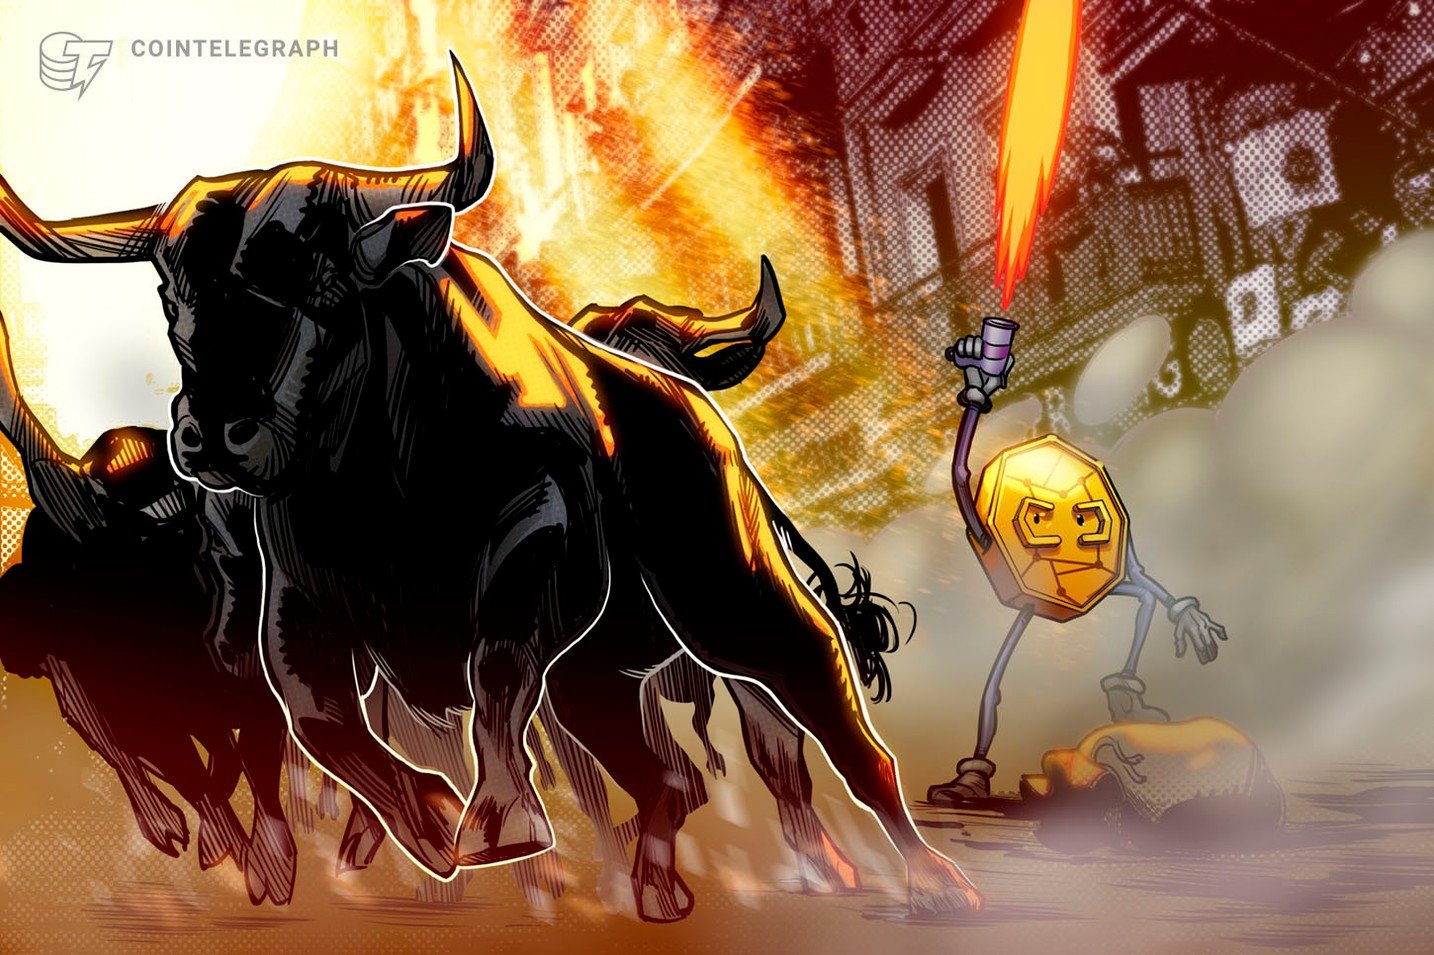 Phim tài liệu về tiền điện tử 'Bull Run' nói về Bitcoin, mã thông báo và chứng nghiện giao dịch